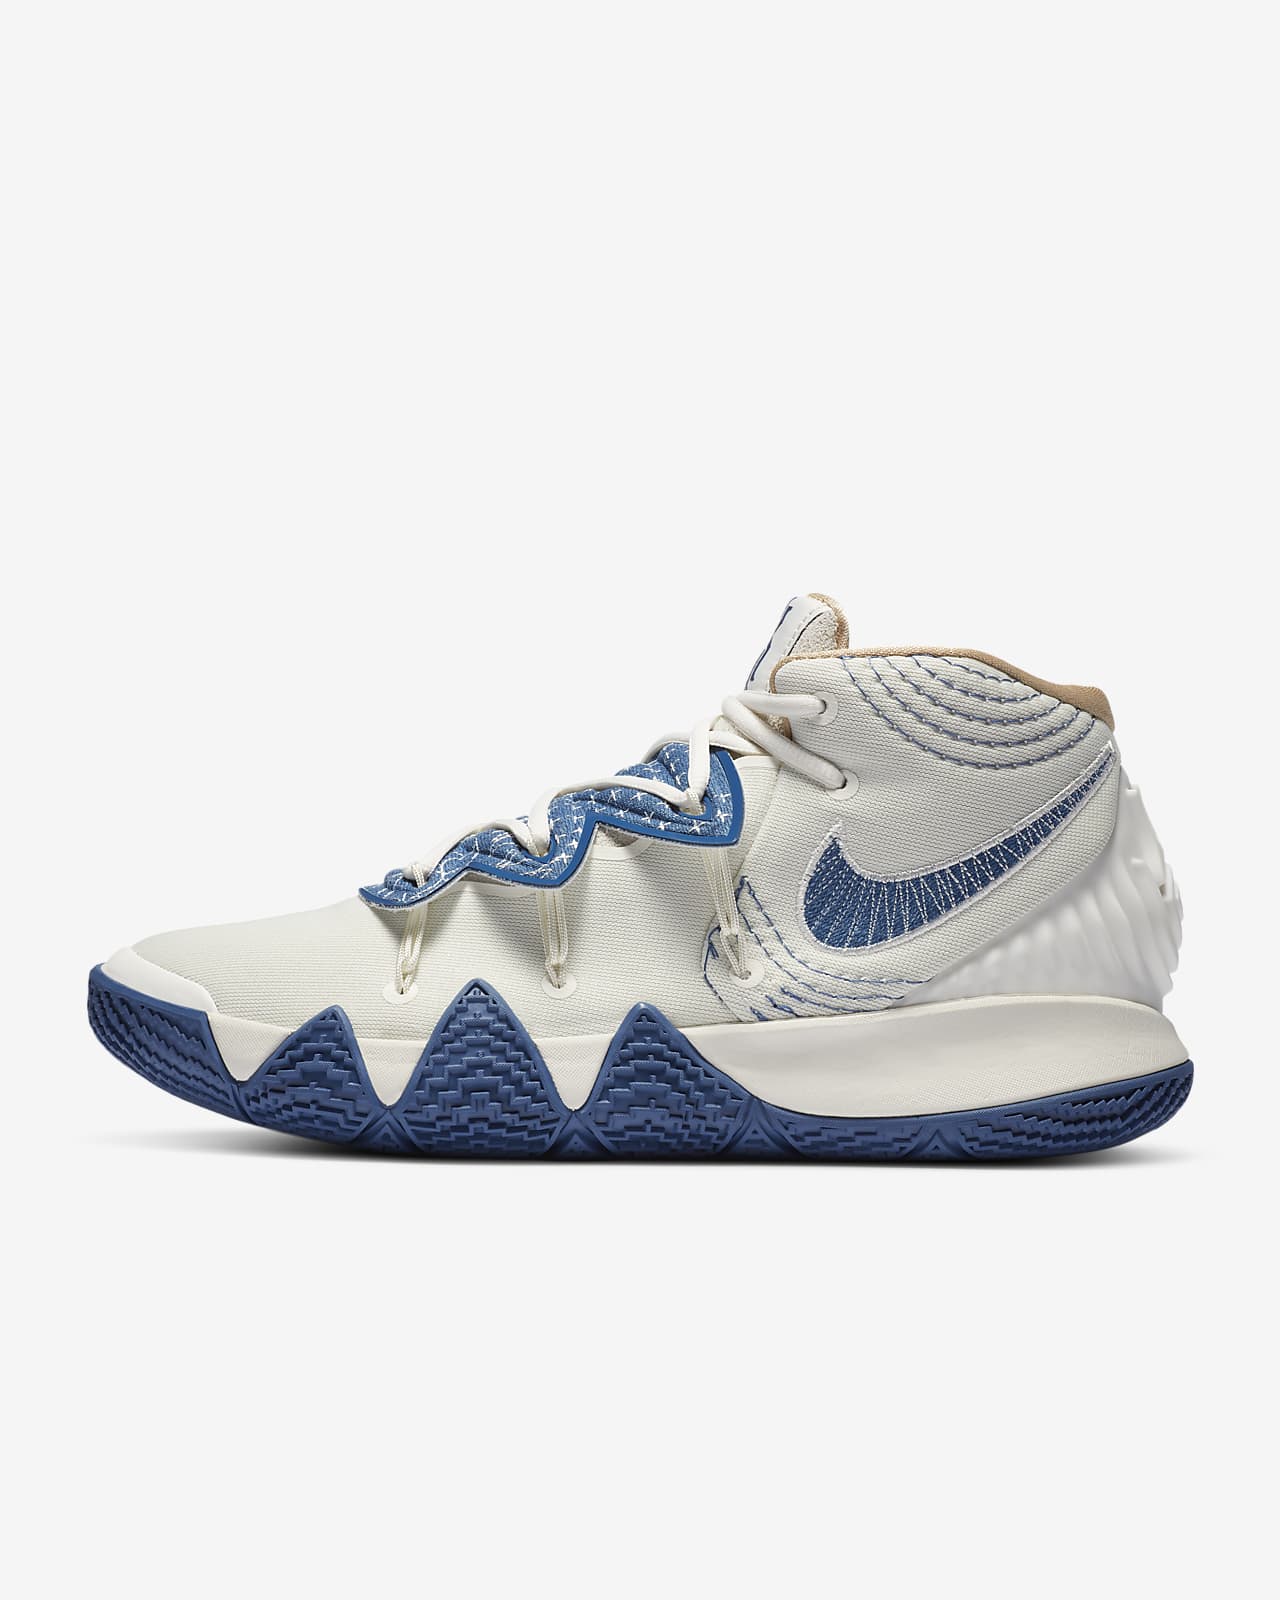 kybrid s2 basketball shoe